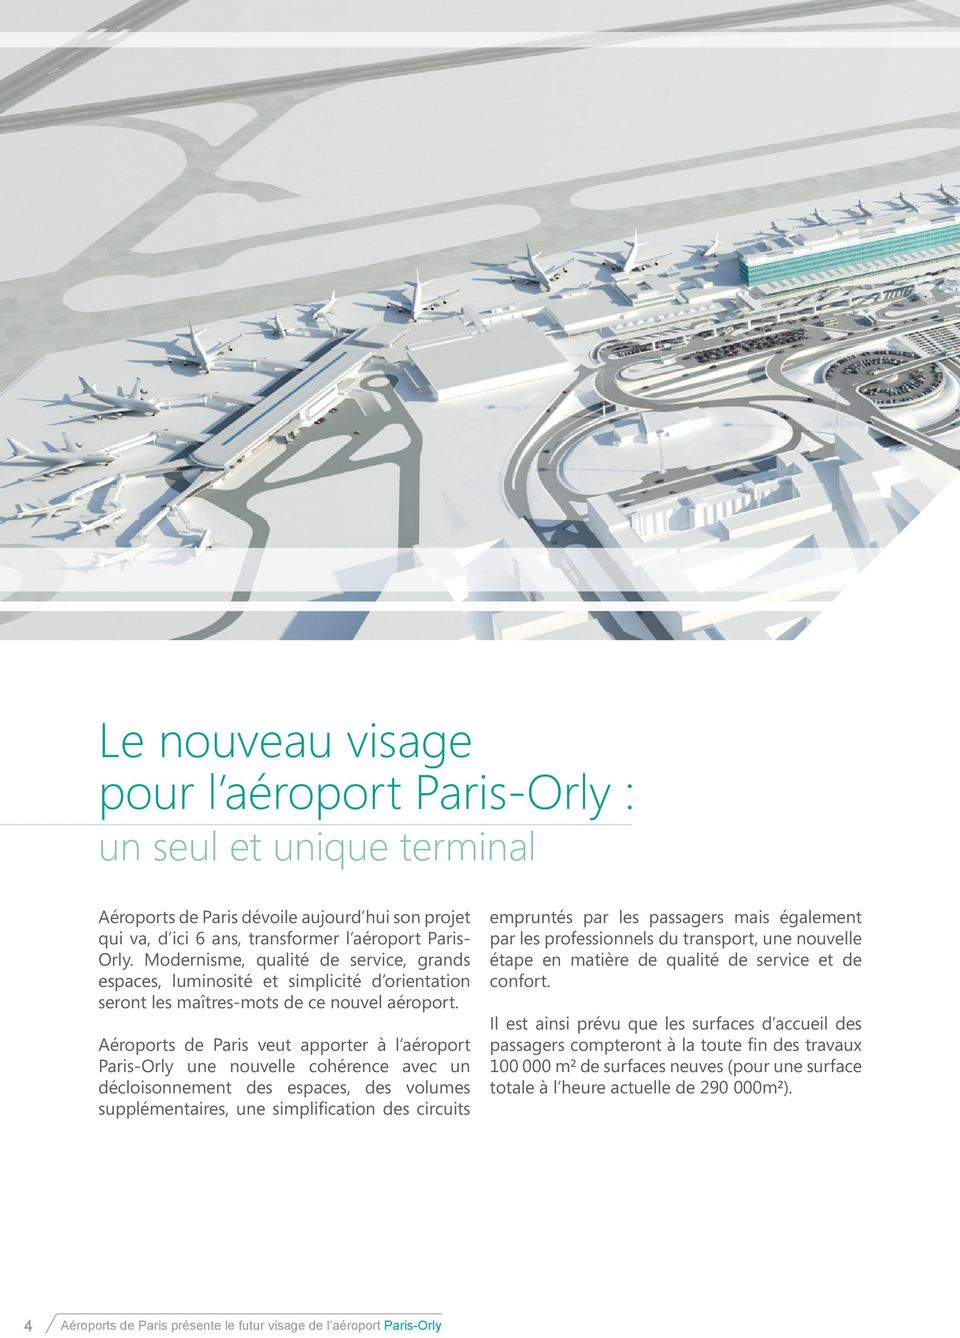 Aéroports de Paris veut apporter à l aéroport Paris-Orly une nouvelle cohérence avec un décloisonnement des espaces, des volumes supplémentaires, une simplification des circuits empruntés par les